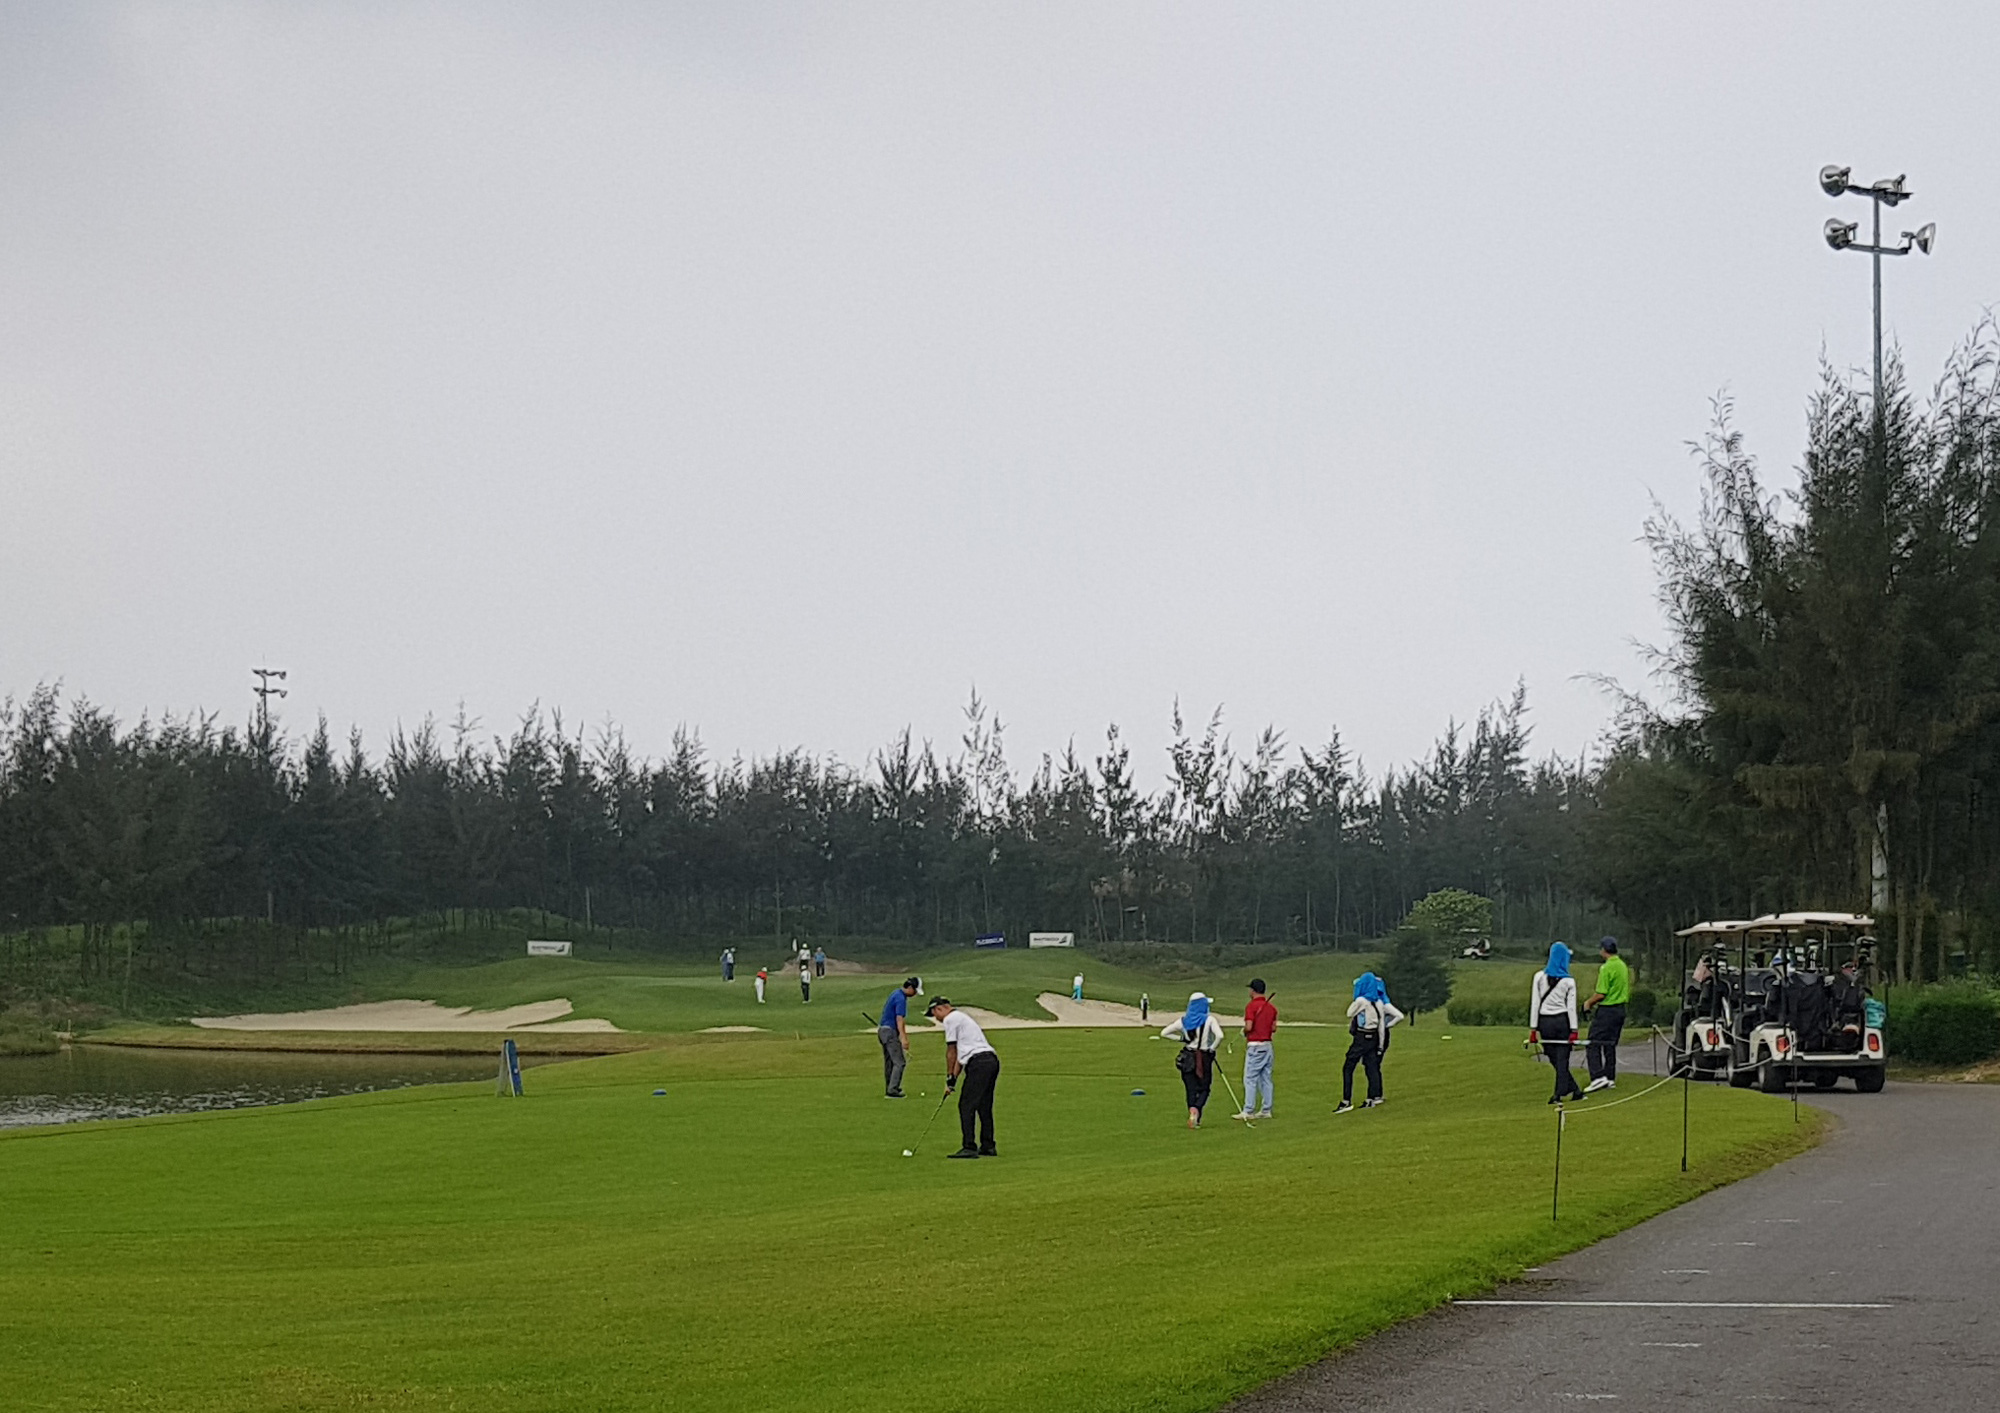 Hàng chục golf thủ tập trung chơi golf ở FLC Sầm Sơn trong khi giãn cách xã hội - Ảnh 7.